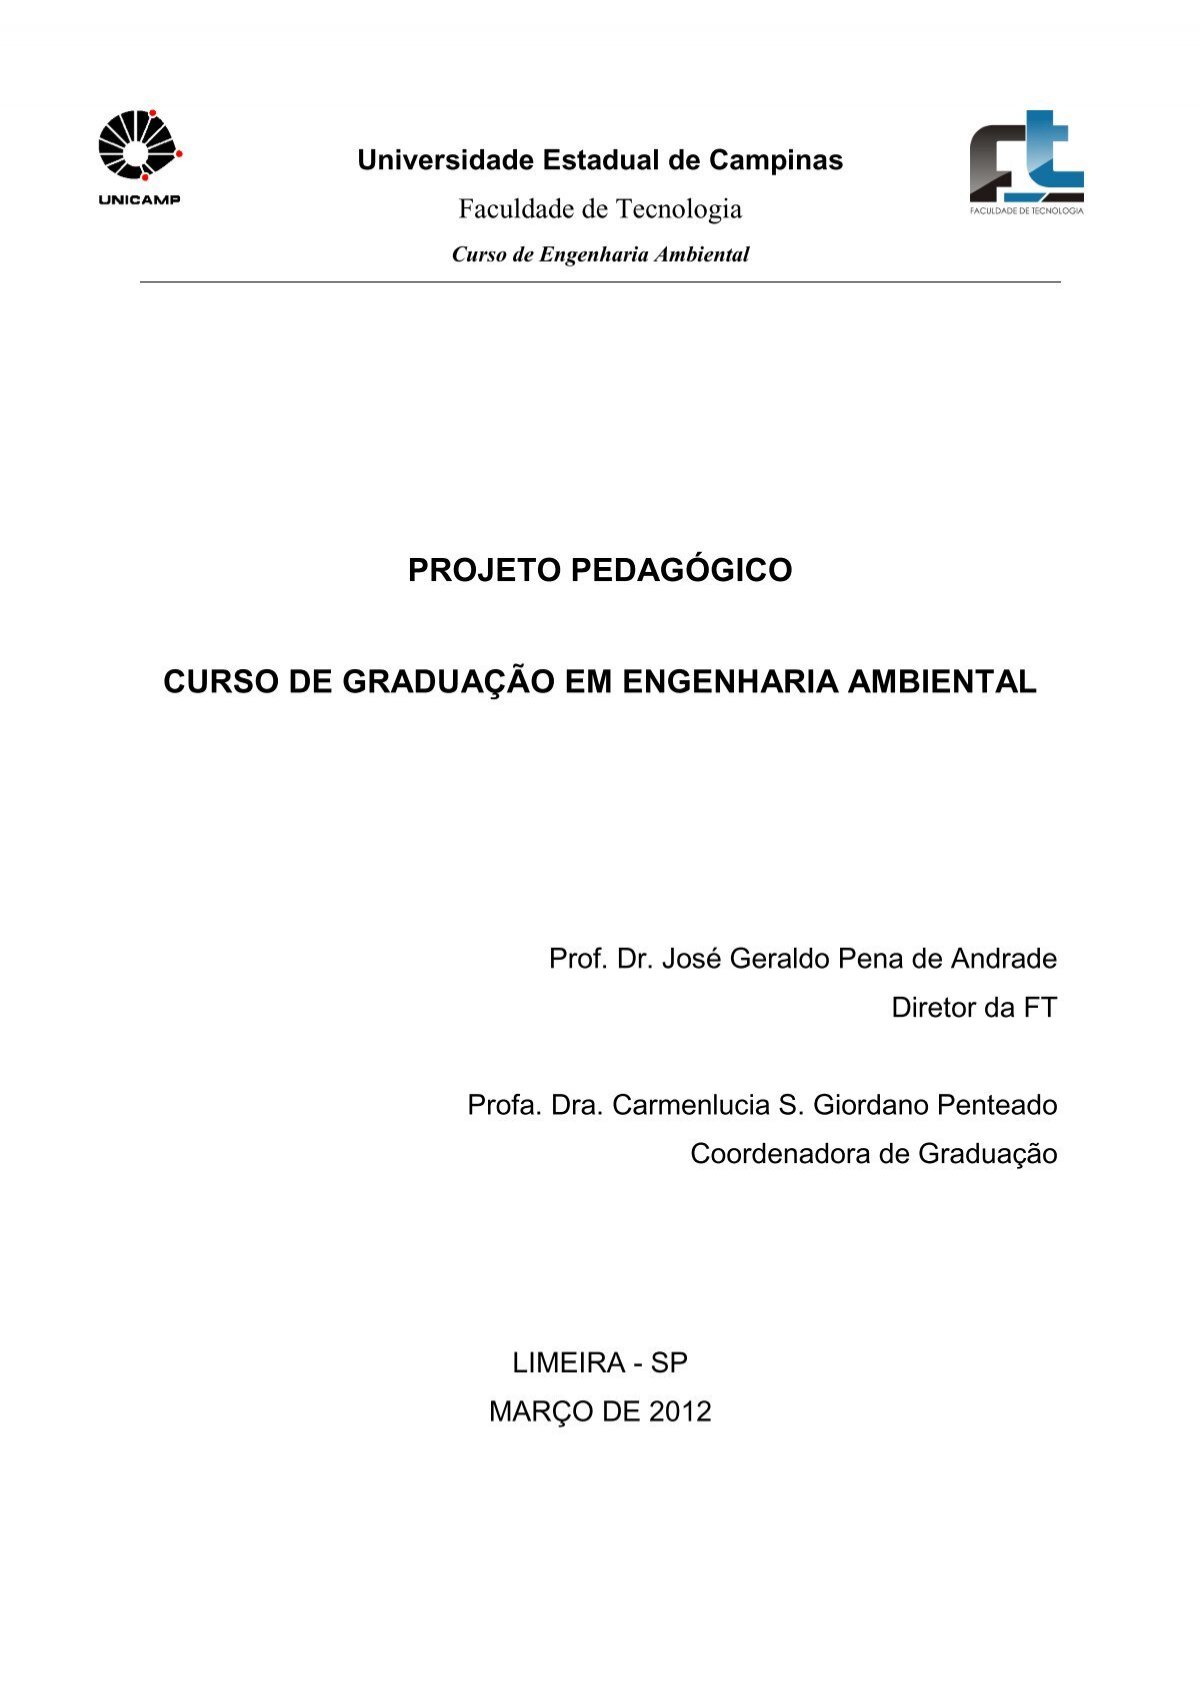 Fábio Rodrigues Catapani - Associado à Diretoria Financeiro-Administrativa  - SanFran Jr.